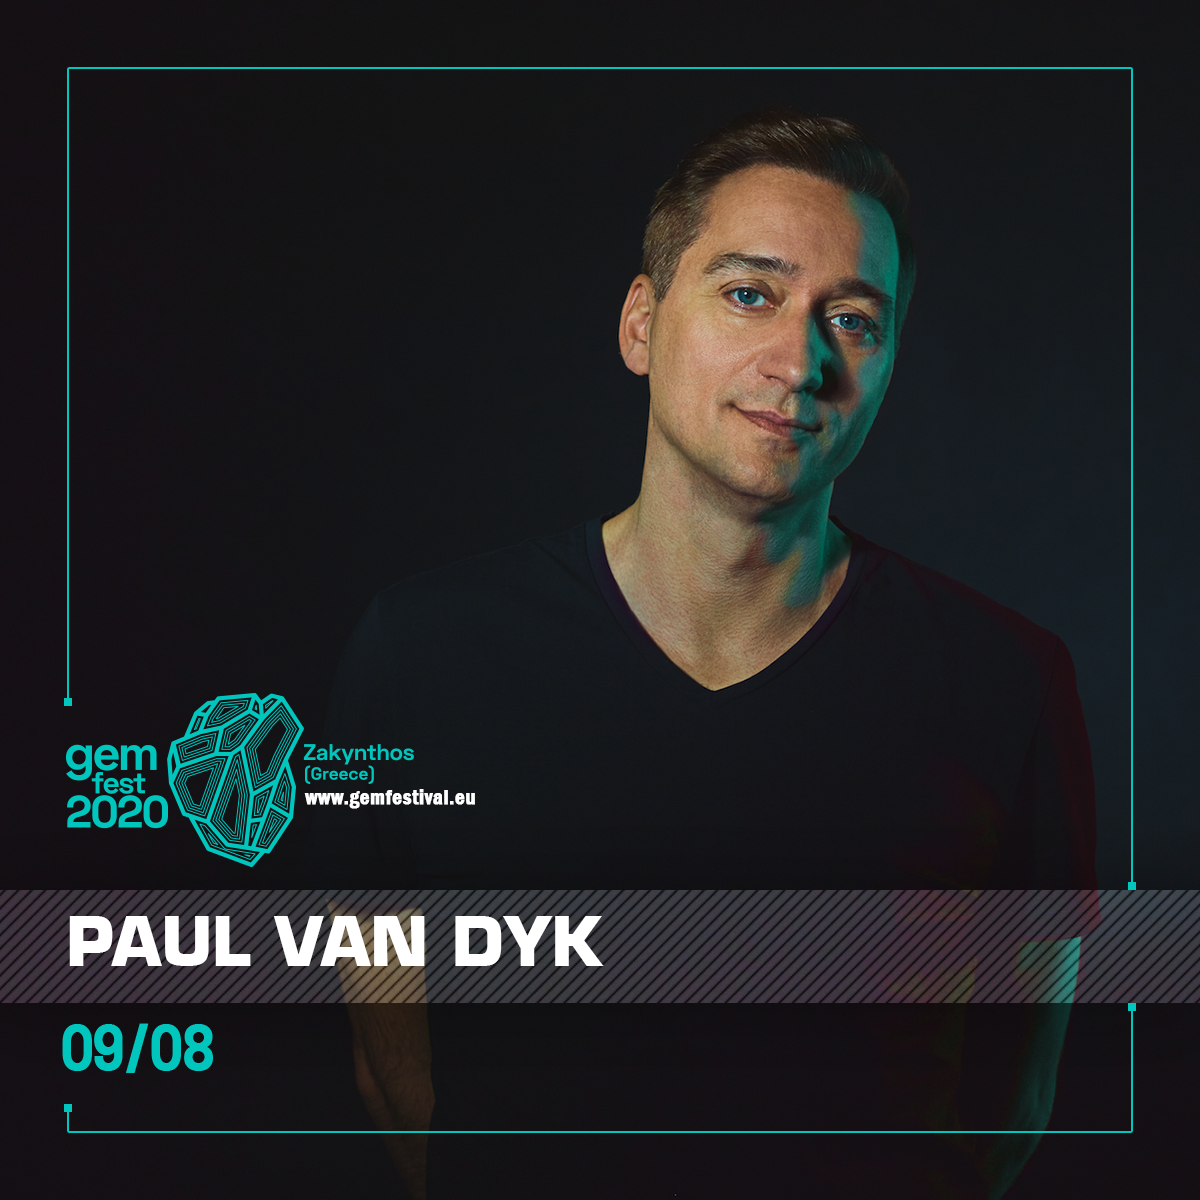 Paul van Dyk at GEM Fest, Zakynthos, Greece on 9th of August 2020